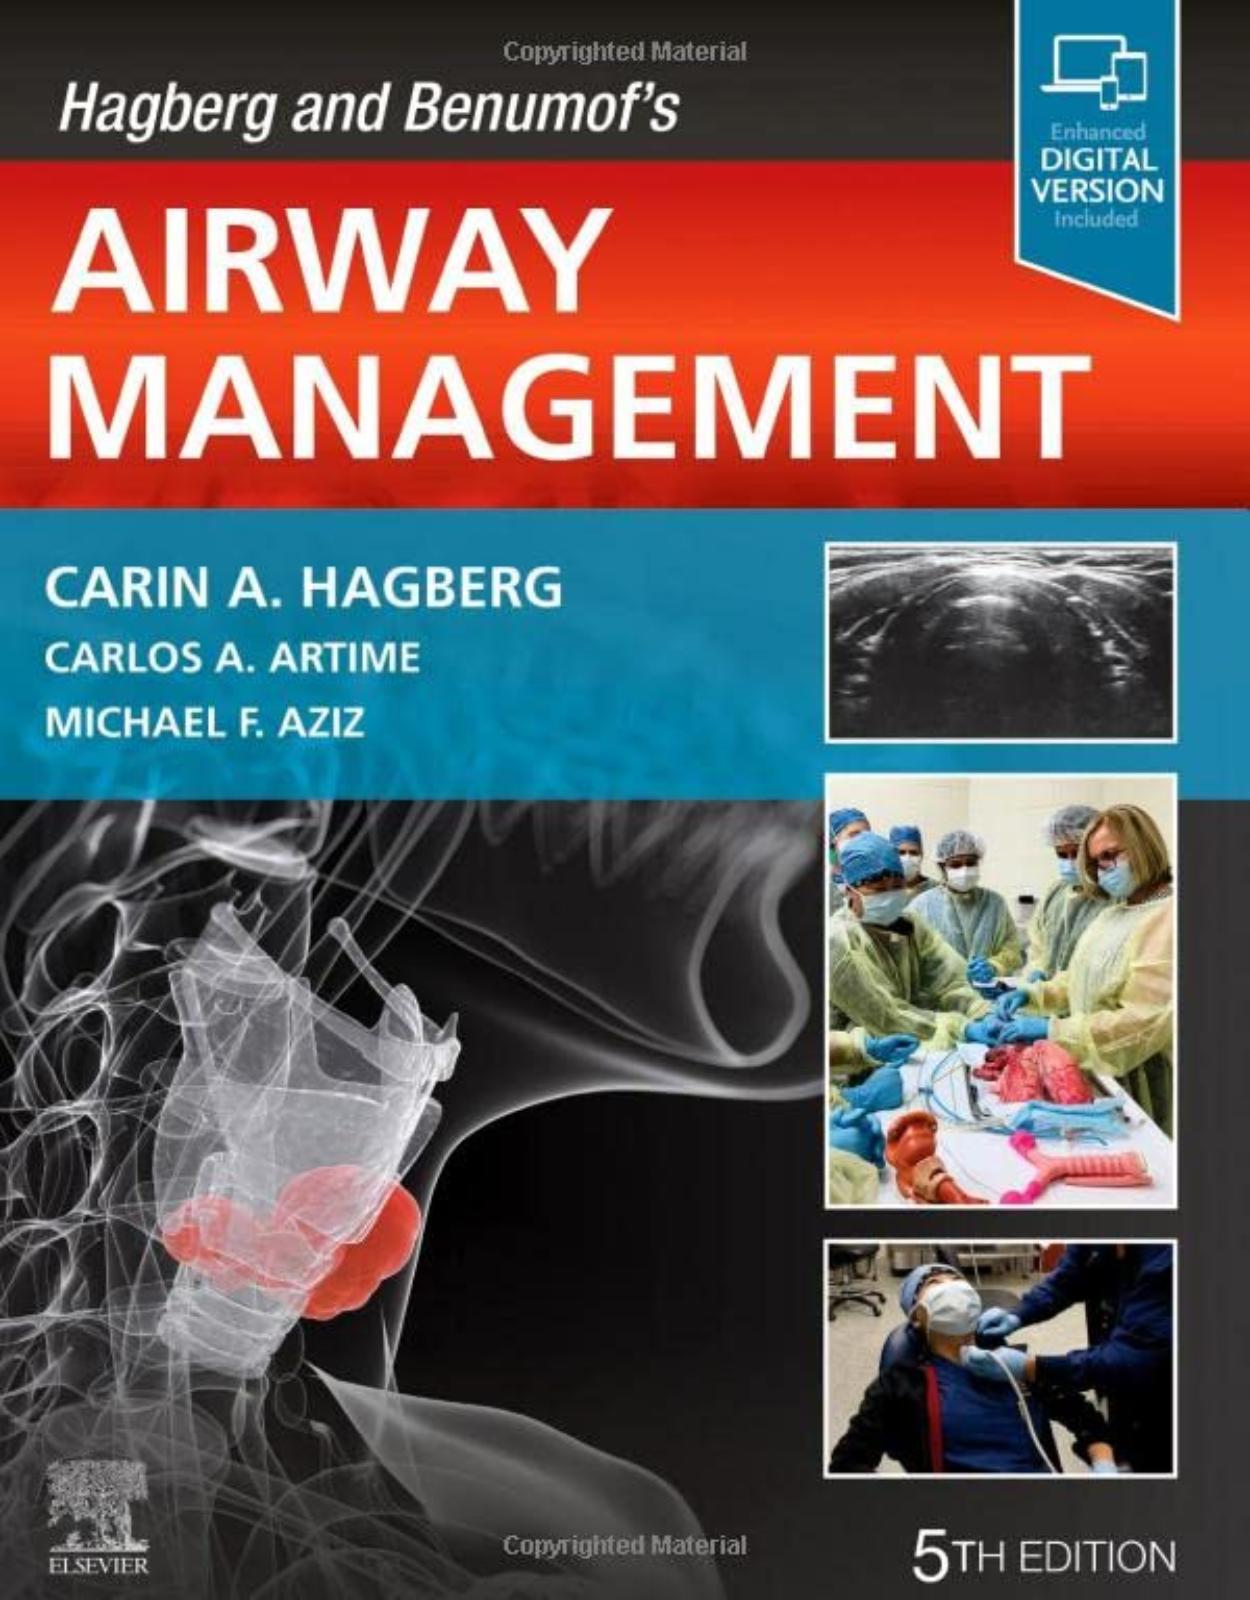 Hagberg and Benumof’s Airway Management 